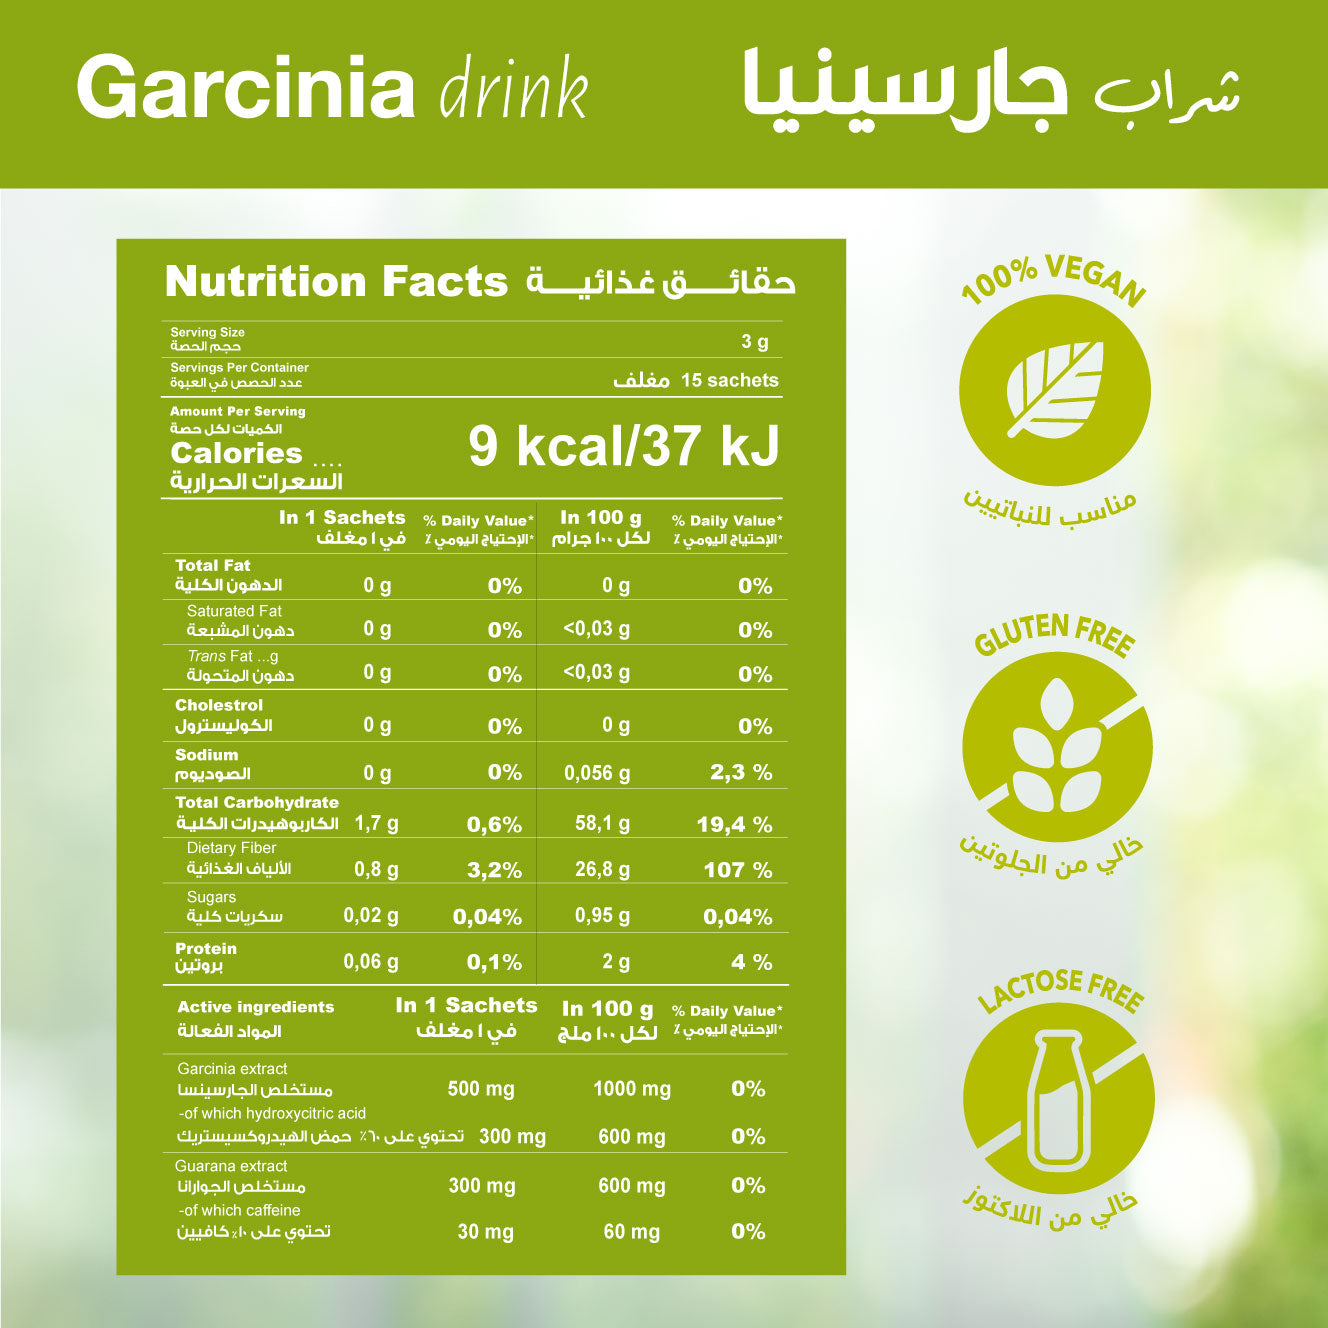 Garcinia Cambogia - Fat Burning Dietary Supplement